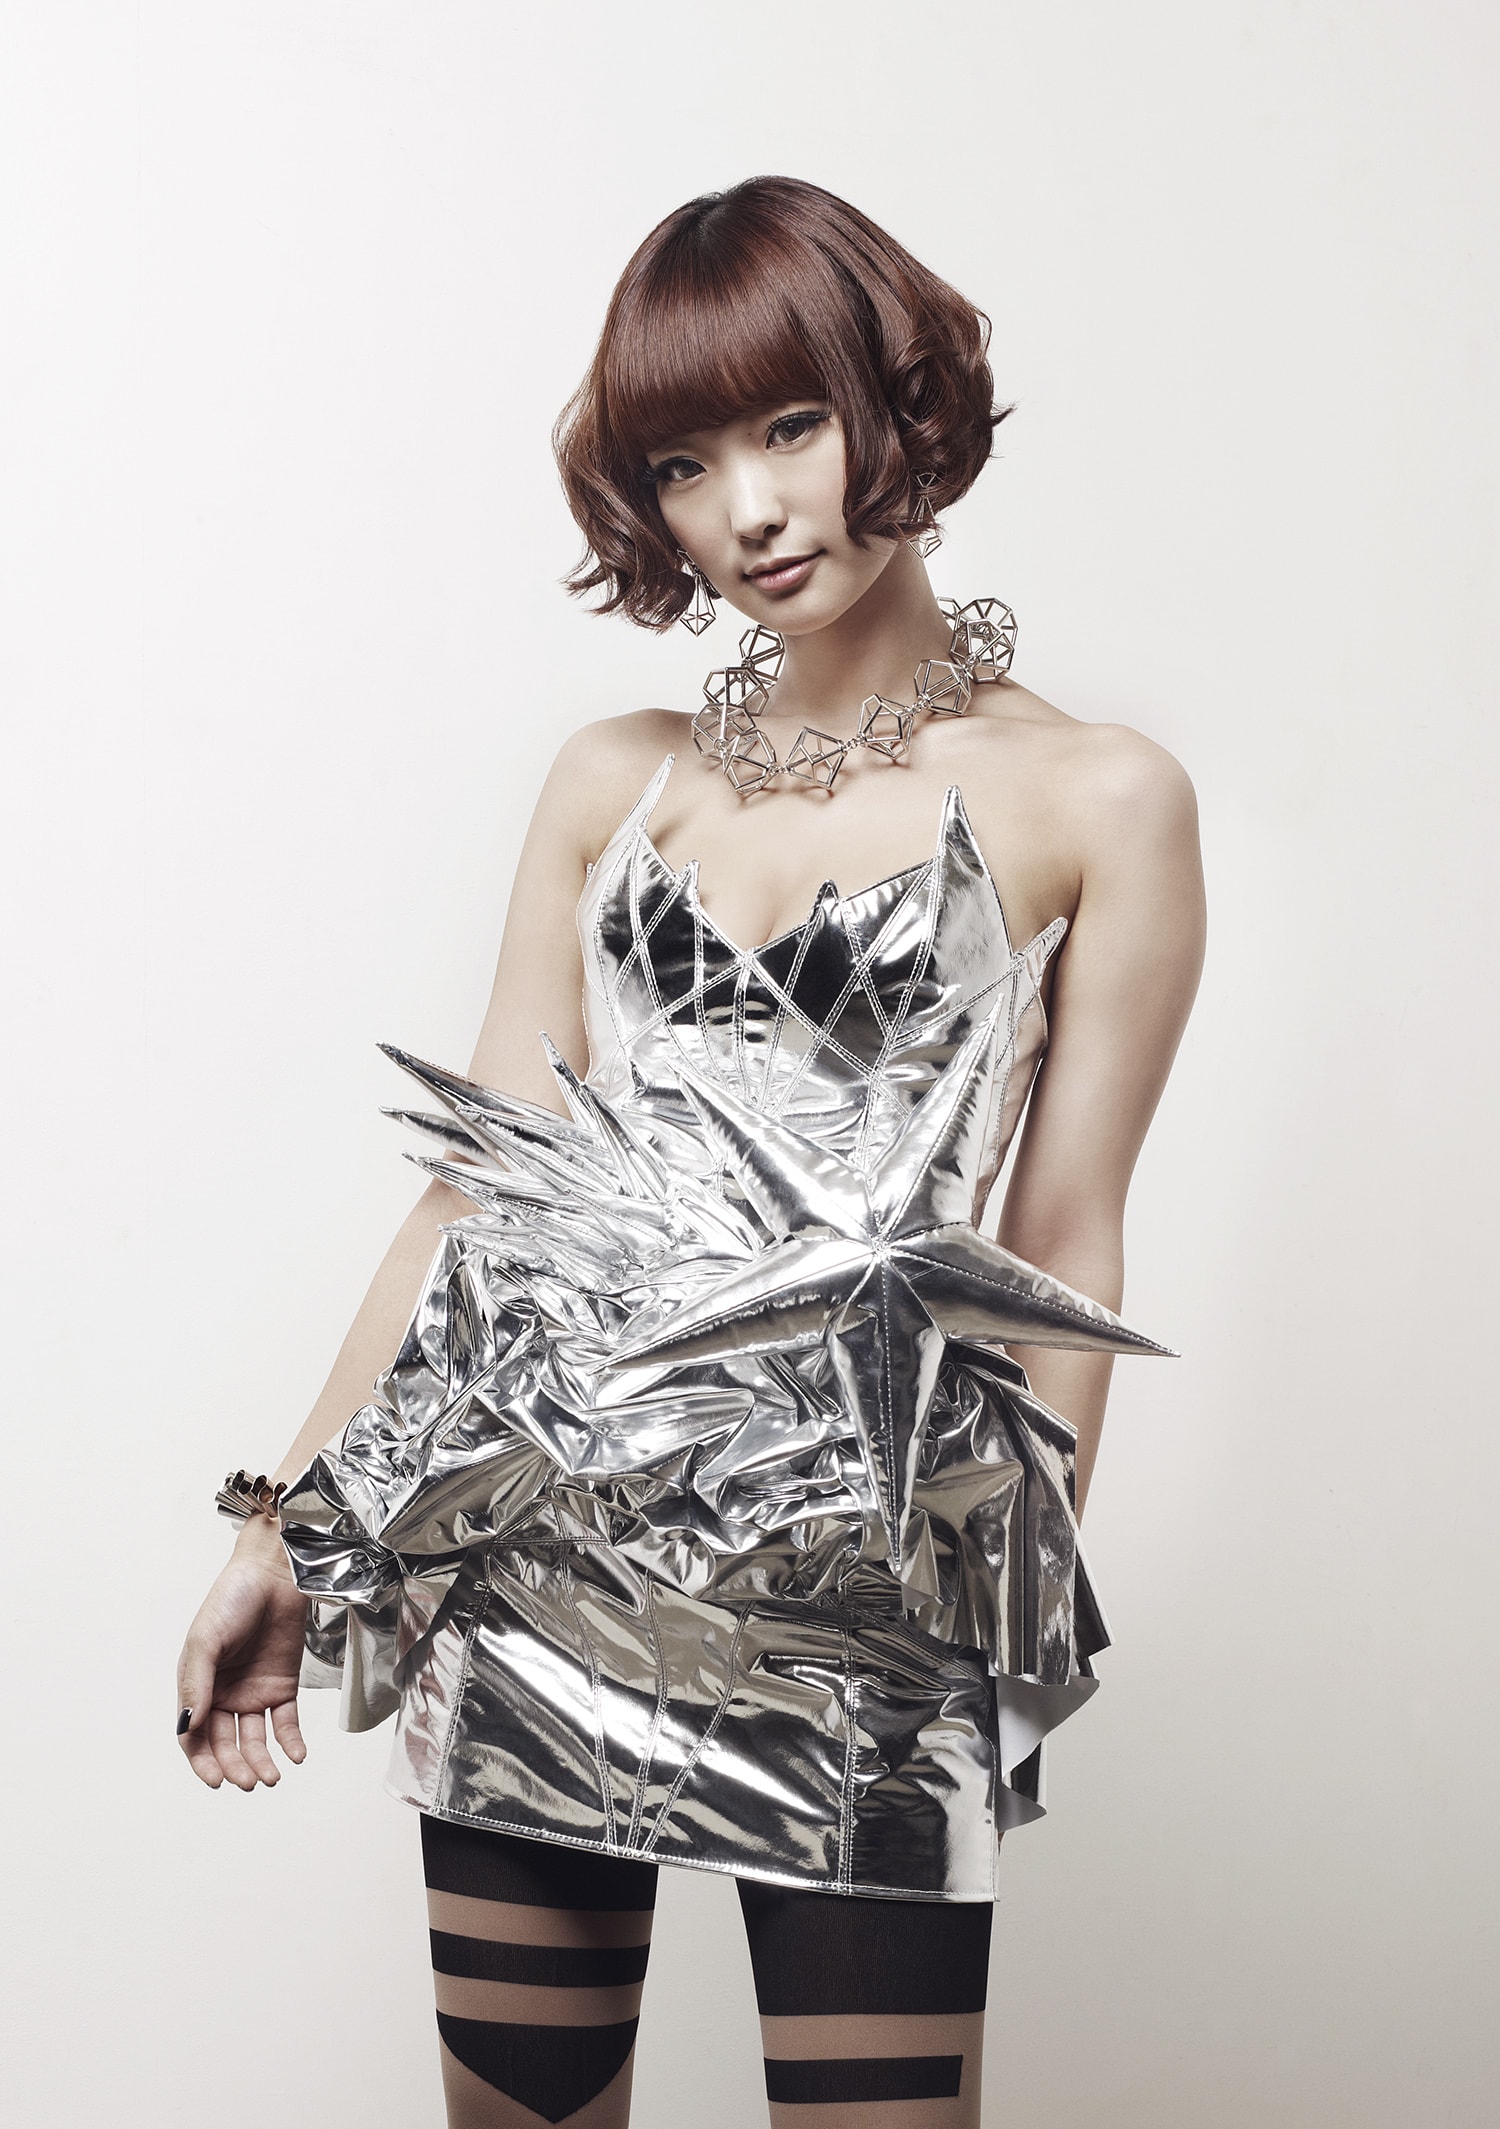 2014年2月5日発売 Yun*chiの1stアルバム「Asterisk*」にてflakeのピアス、ネックレス、バングルを着用頂きました。